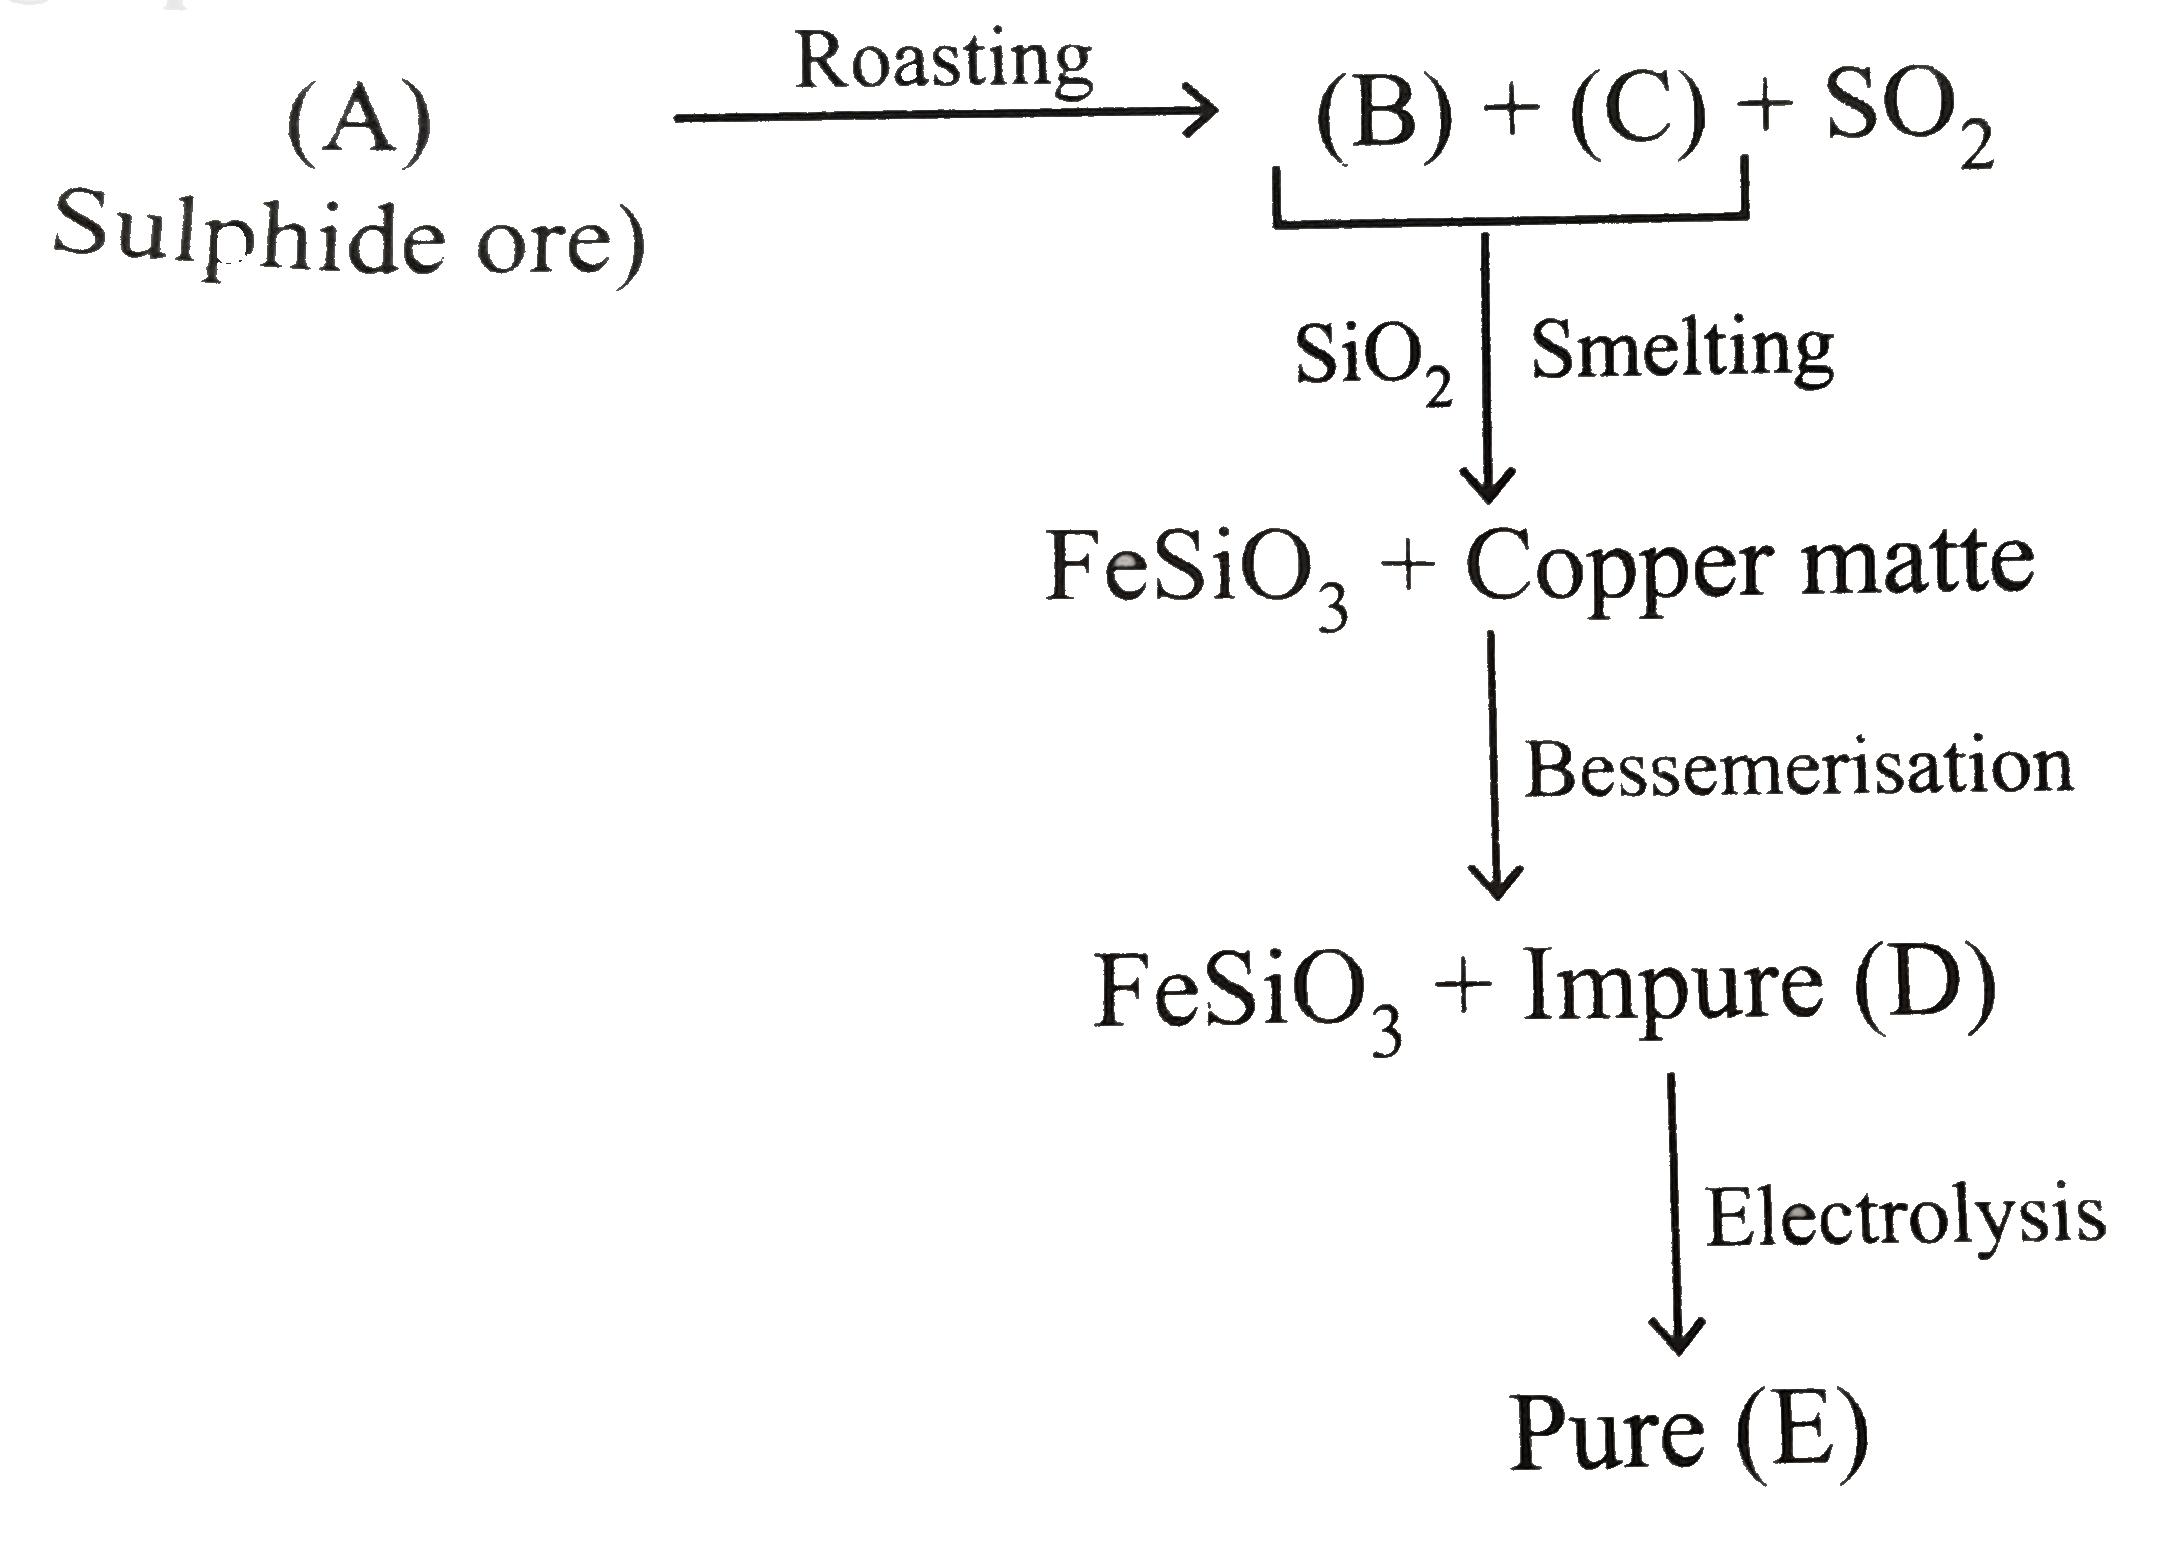 Composition of copper matte is.  (a)C
u
(2)
S
+
F
e
S
 (small amount)

 (b)
C
u
(2)
S
+
F
e
S
 (small amount)

 (c)	
C
u
(2)
+
F
e
S
O
(4)
 (small amount)

 (d)
C
u
(2)
S
+
F
e
O
 (small amount)